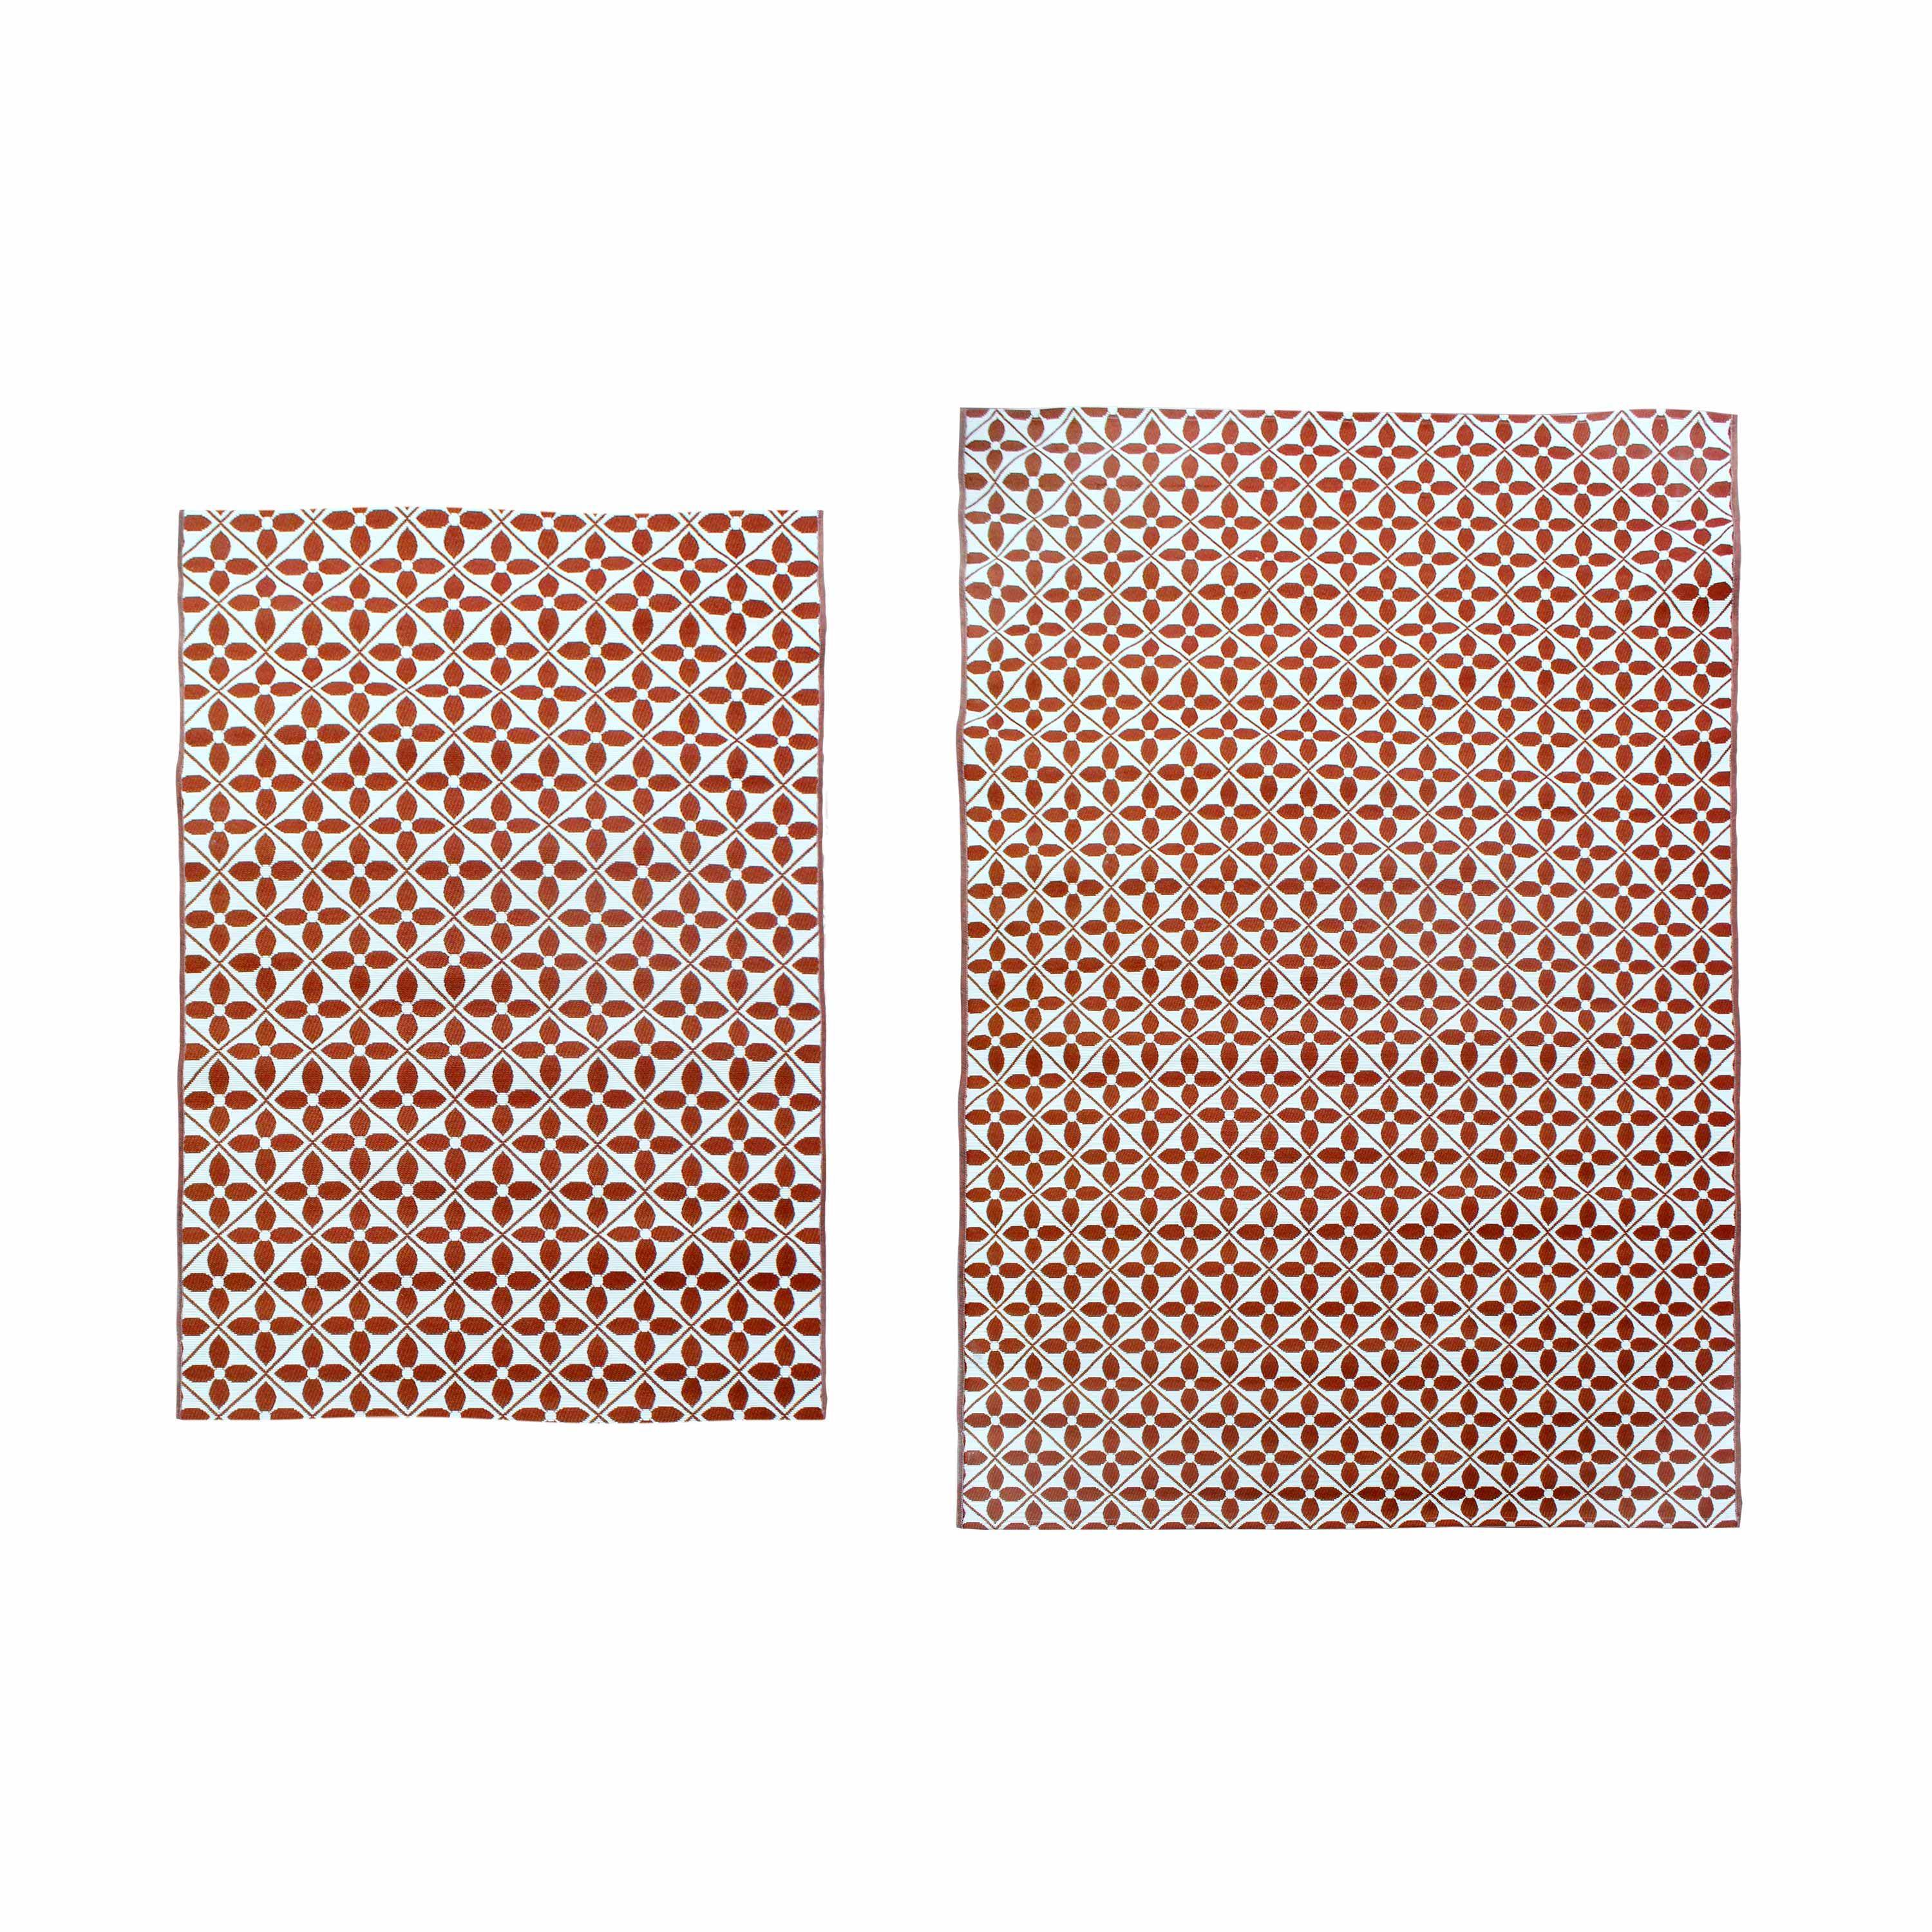 Outdoor rug - 160x230cm - tile print, rectangular, indoor/outdoor use - Terracotta Photo5